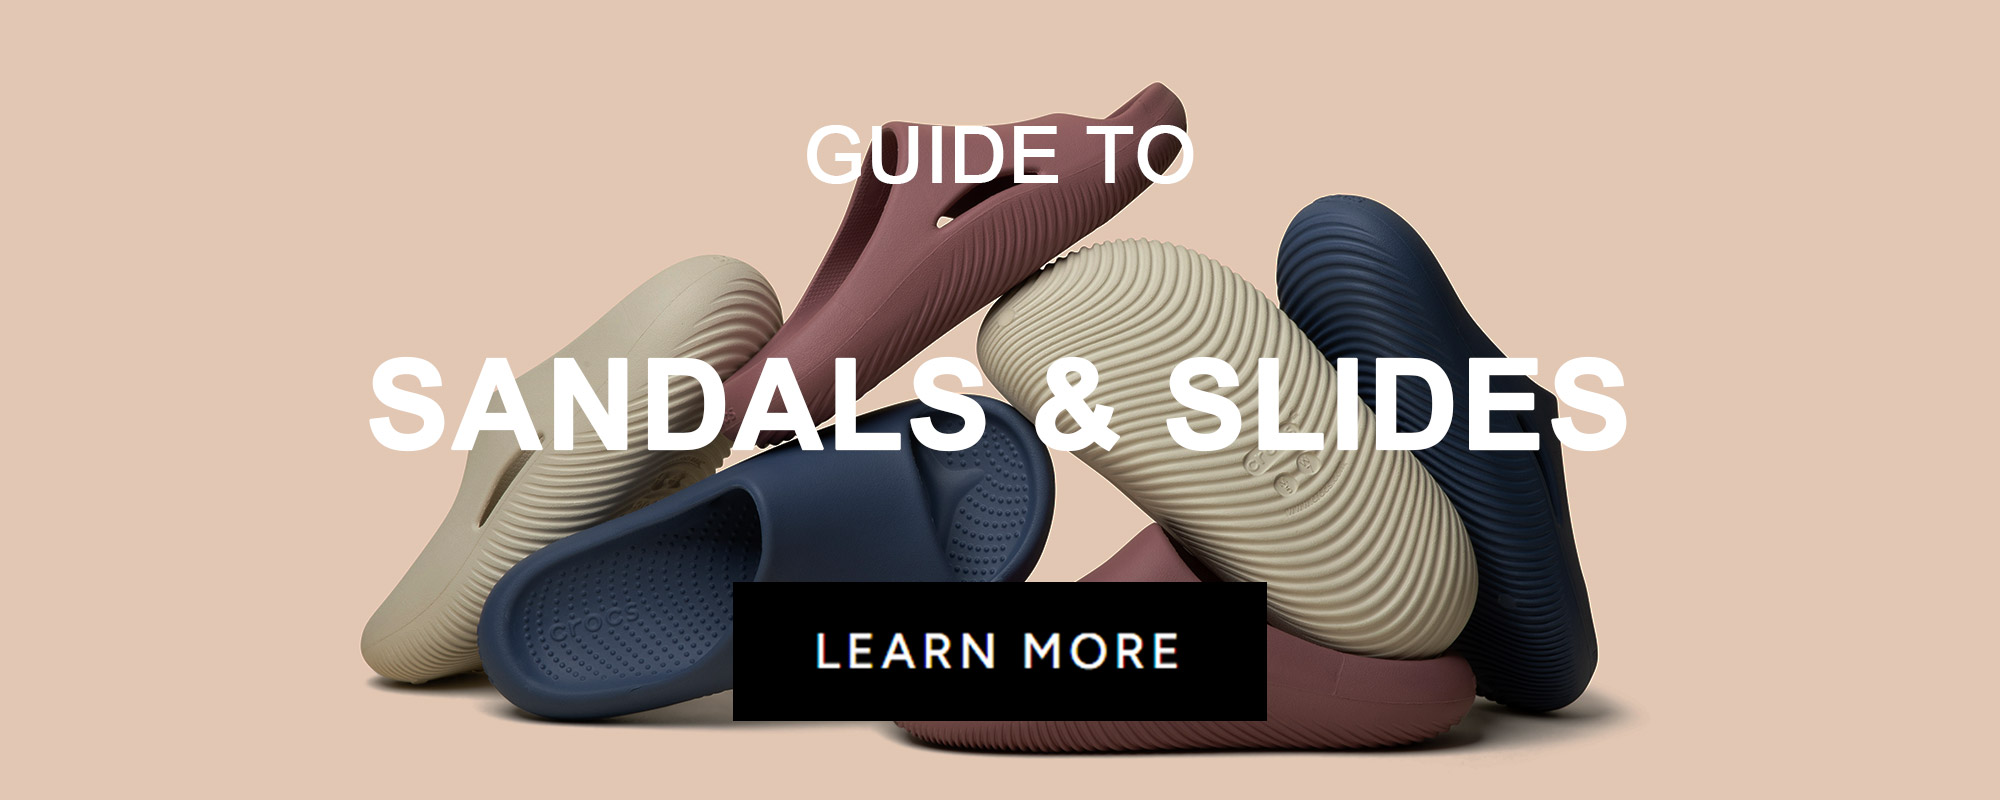 GUIDES_FOOTWEAR_SandalsSlides.jpg